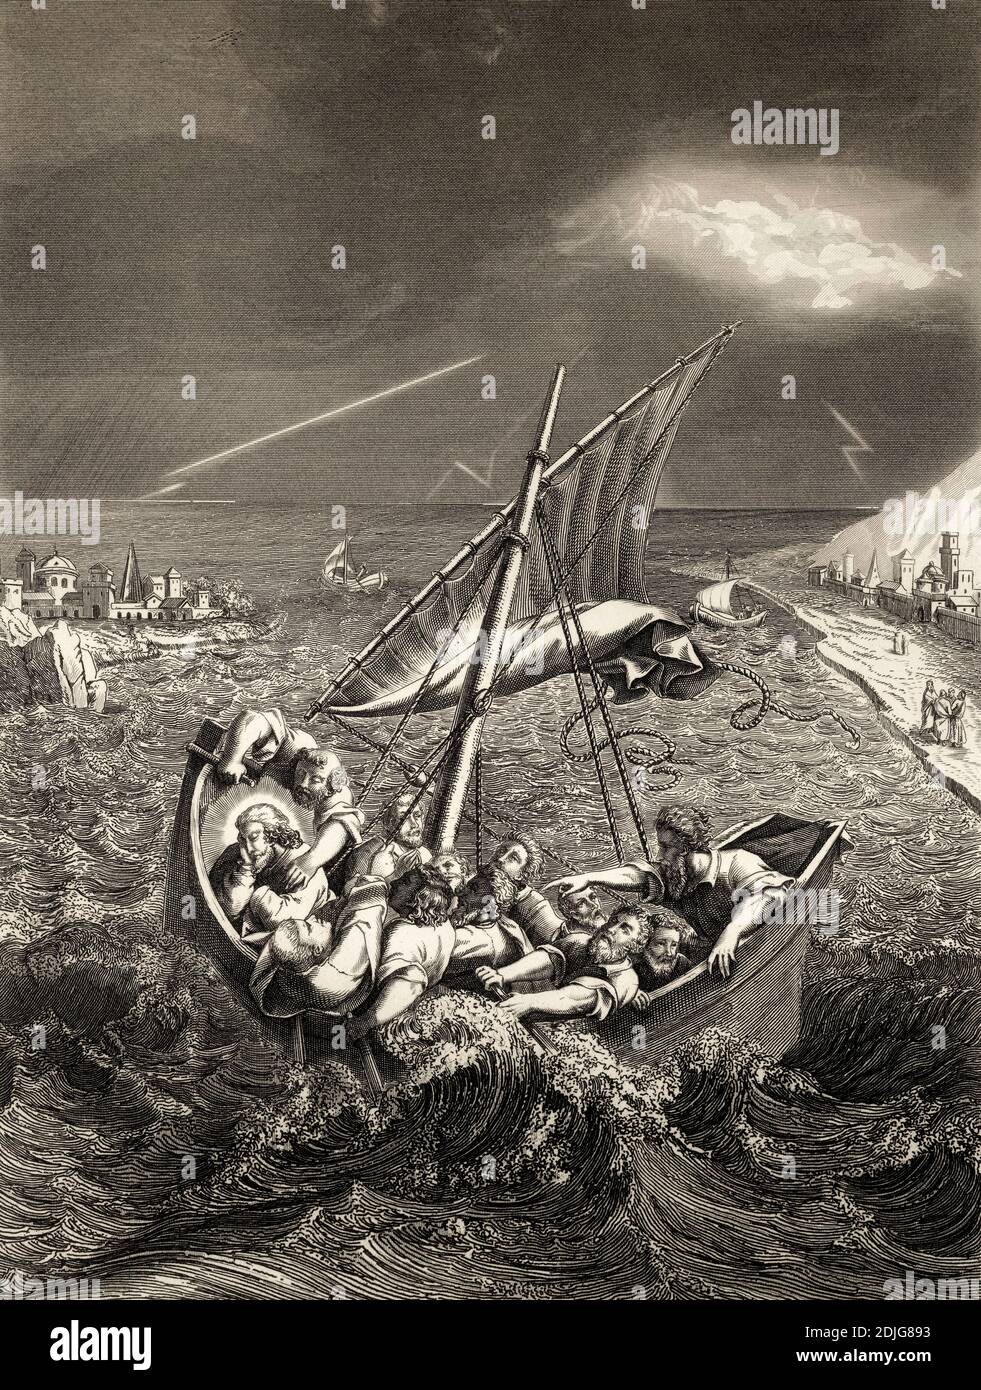 Gesù dorme in barca durante la tempesta, nuovo Testamento, incisione in acciaio 1853, restaurata digitalmente Foto Stock